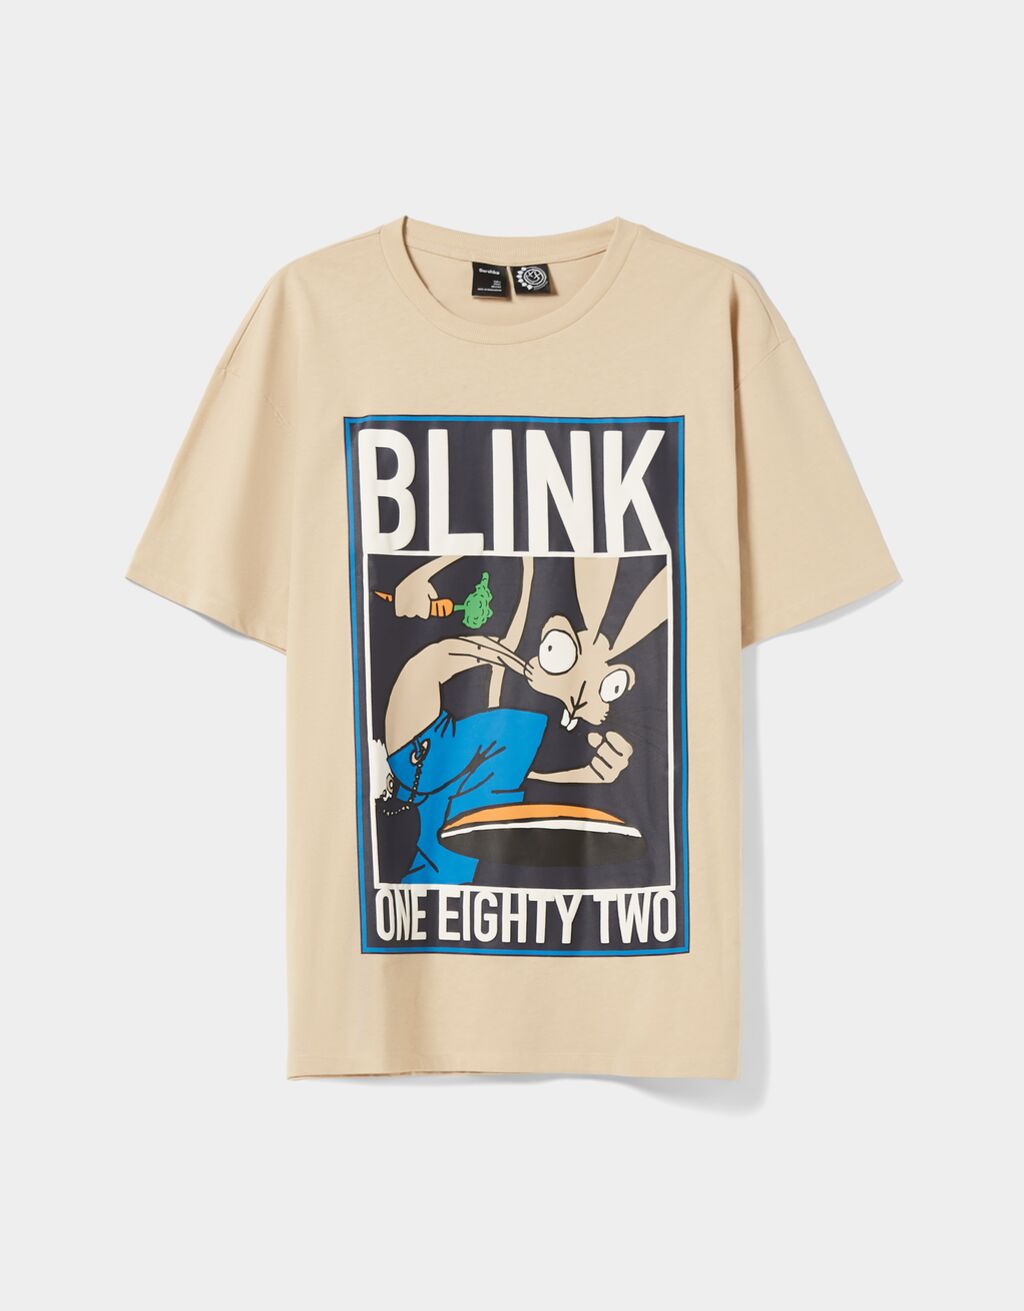 Tričko oversize s krátkým rukávem a potiskem Blink 182